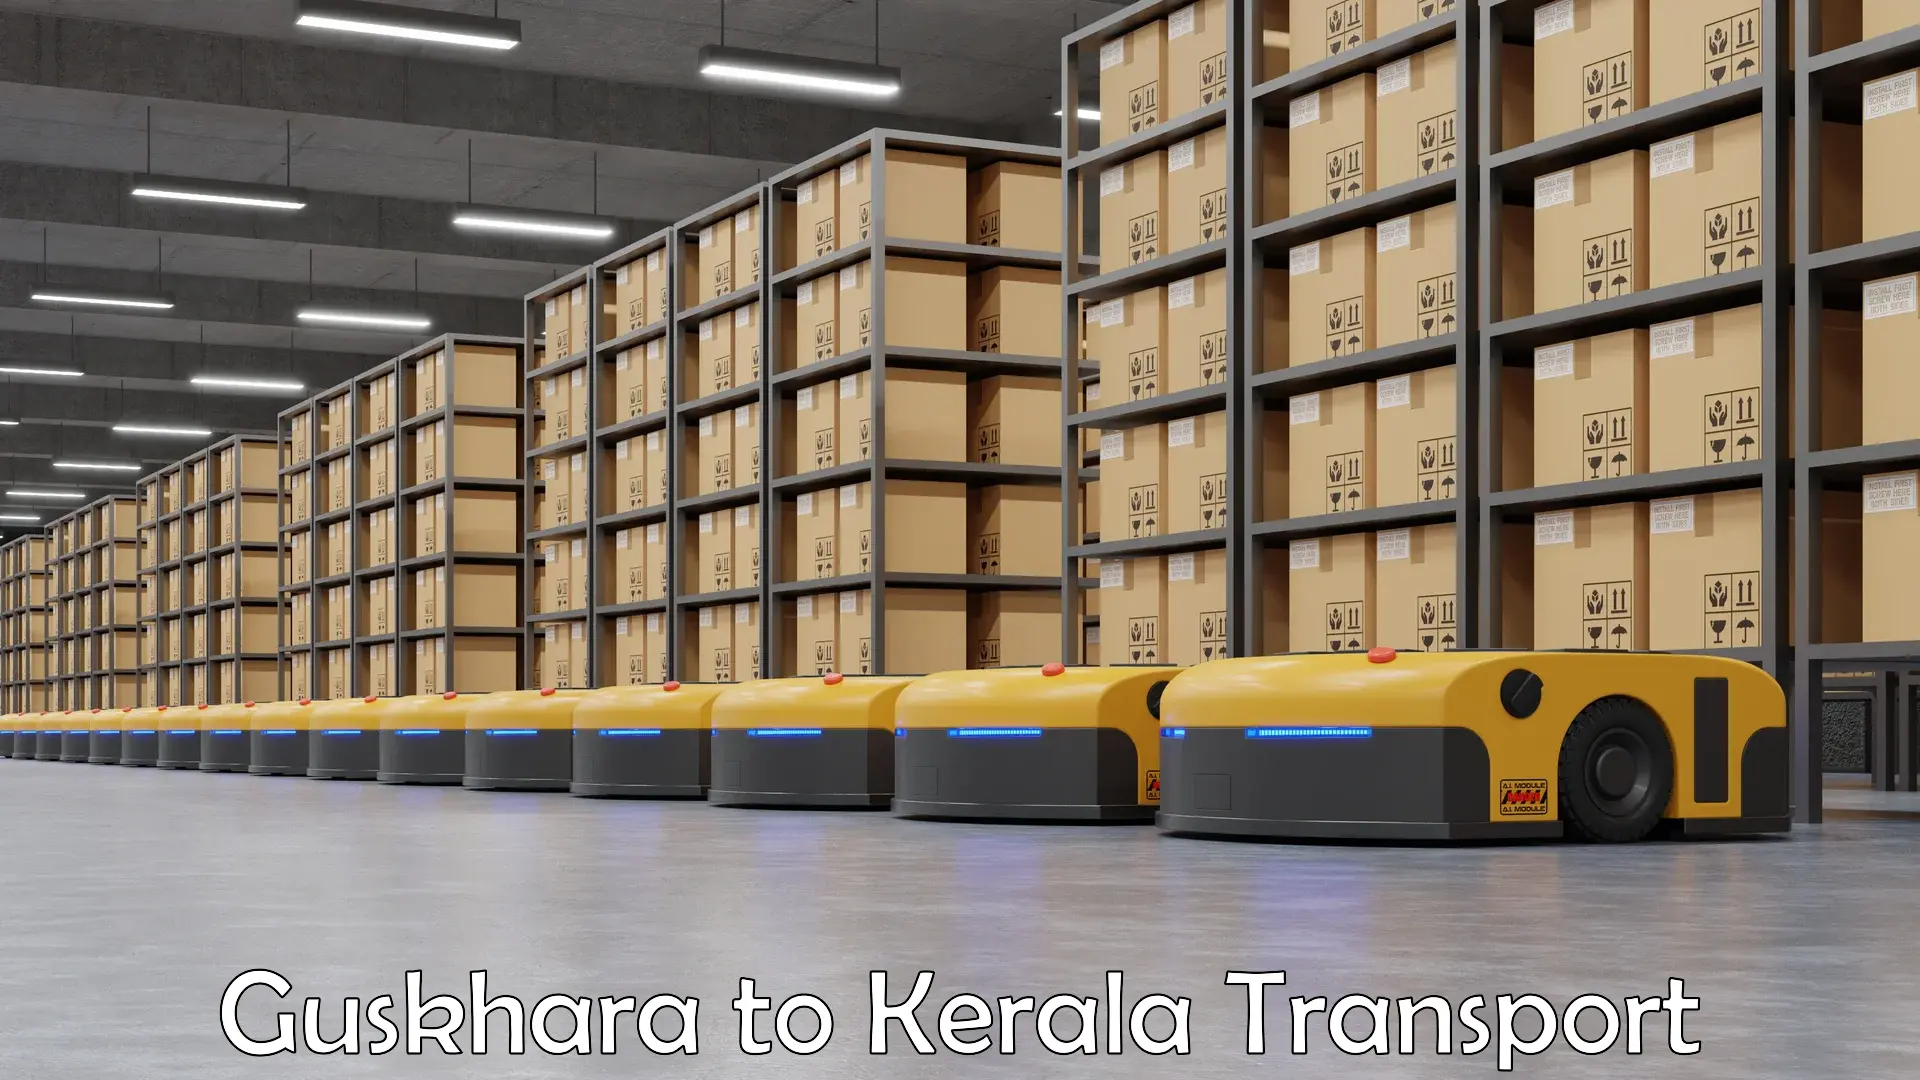 Cycle transportation service Guskhara to Kerala